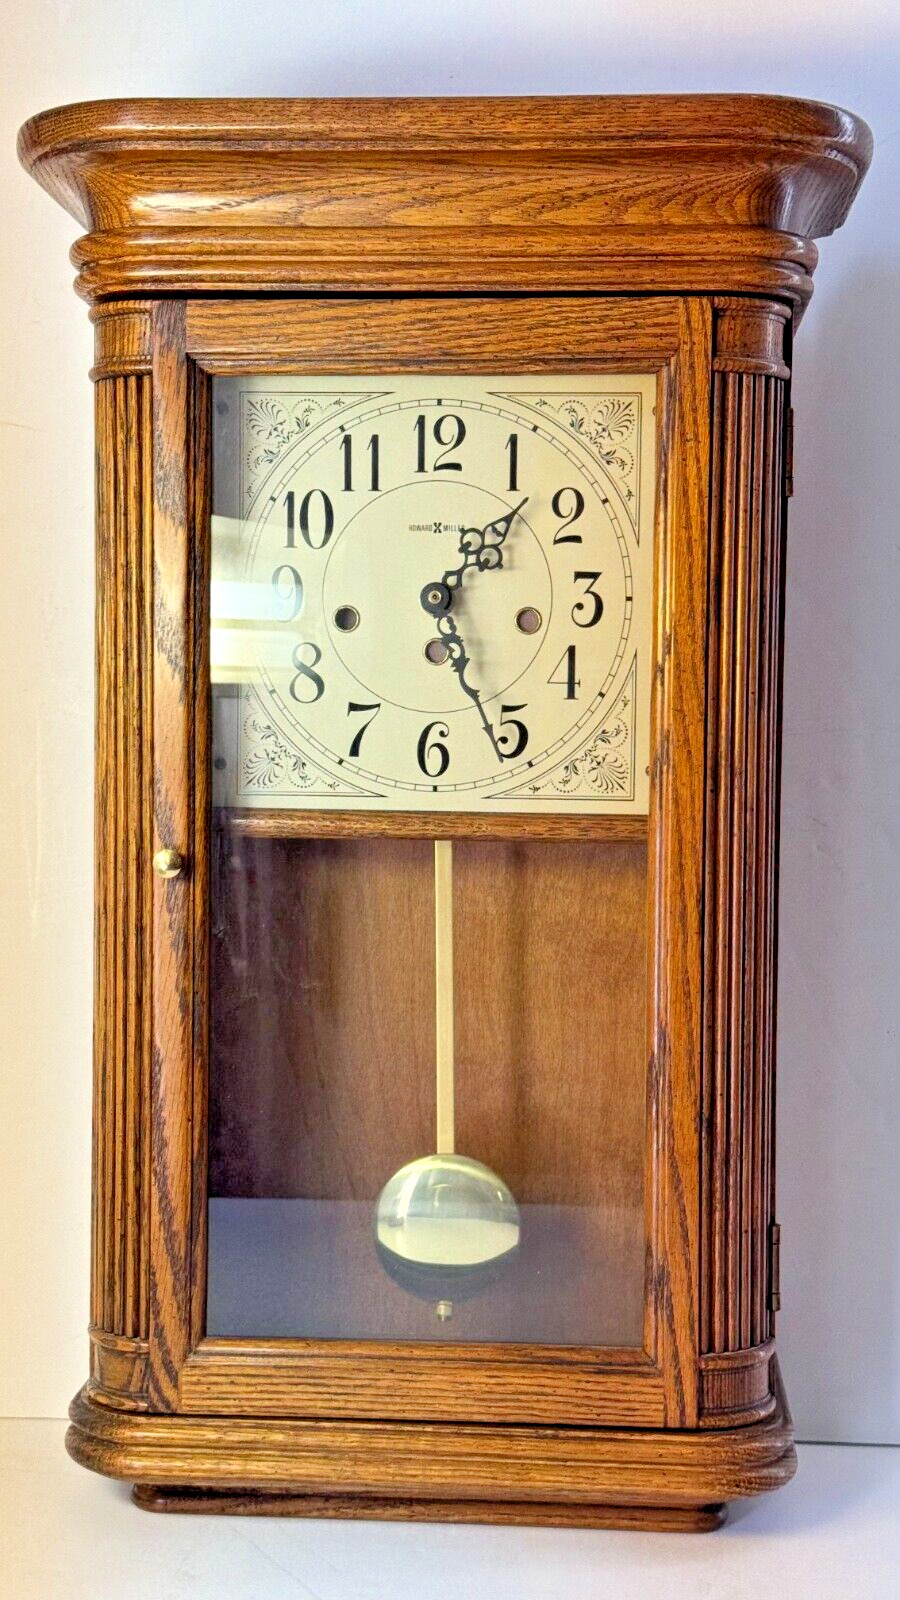 Howard Miller 613-108 Sandringham Oak Wall Clock - Triple Chime - Quartz Battery